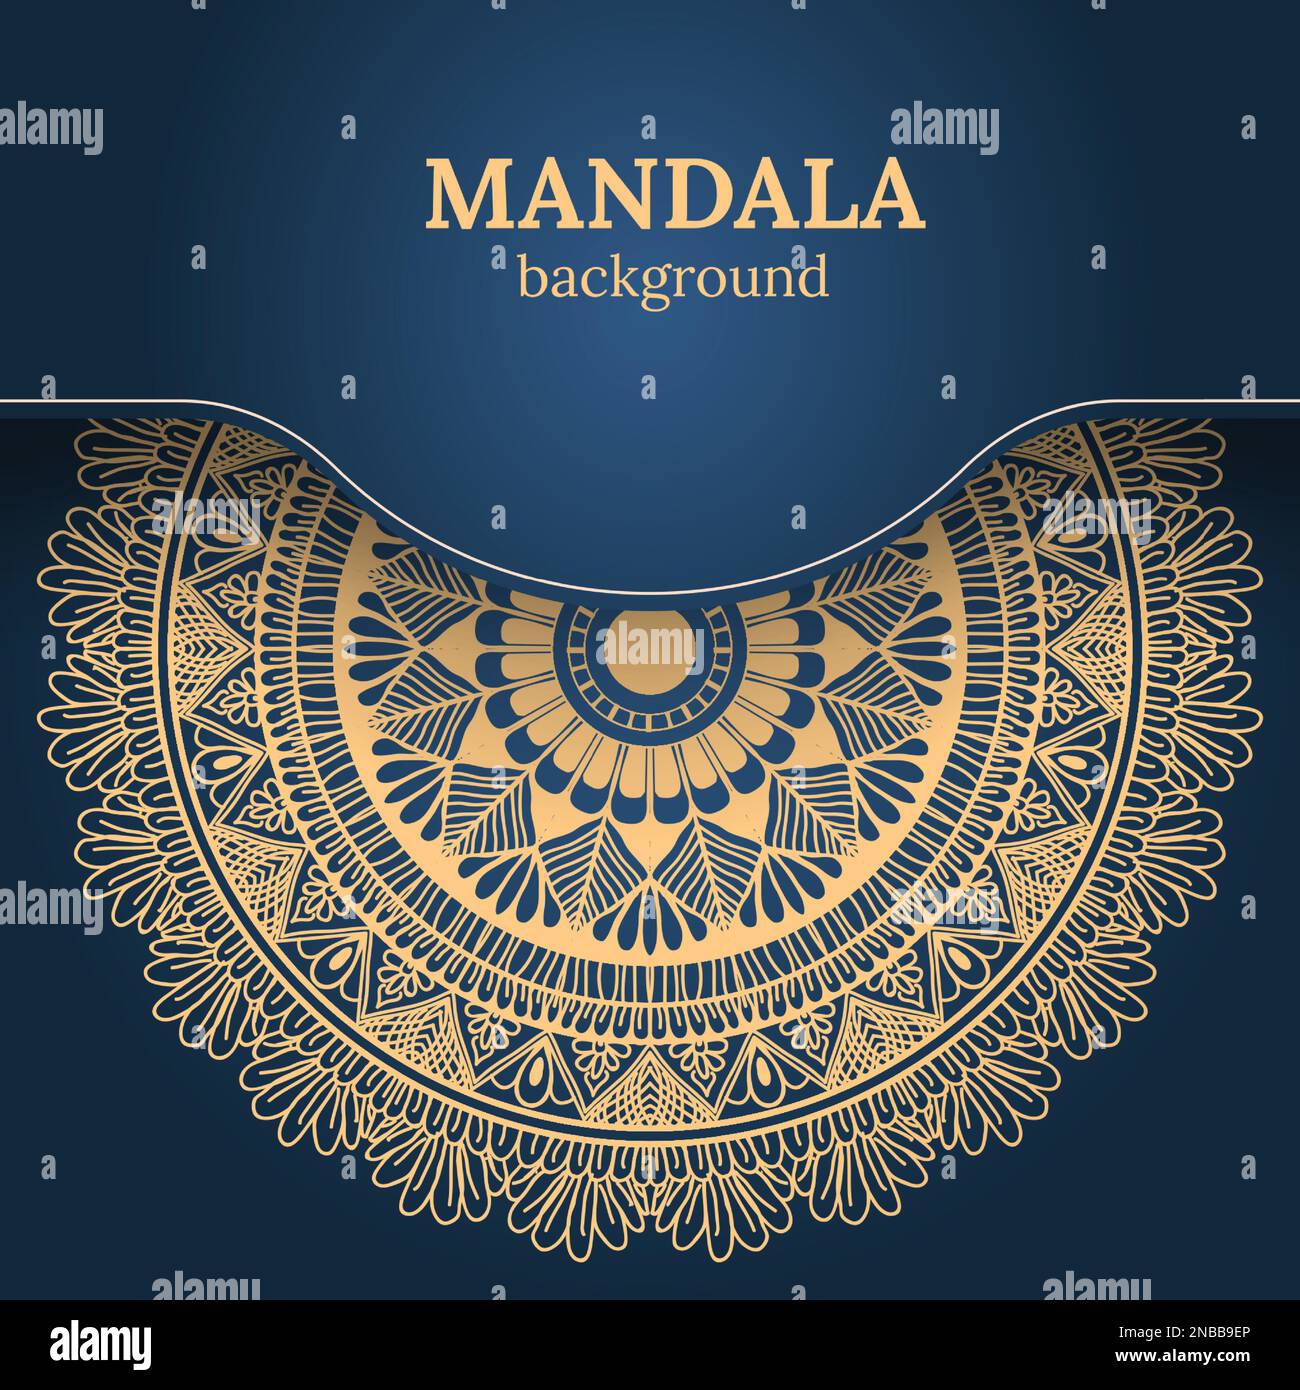 Luxuriöse Dekoration im Mandala-Design. Kann für Karten, Einladungen, Banner, Poster und Druckdesign verwendet werden. Mandalas Hintergrund. Stock Vektor